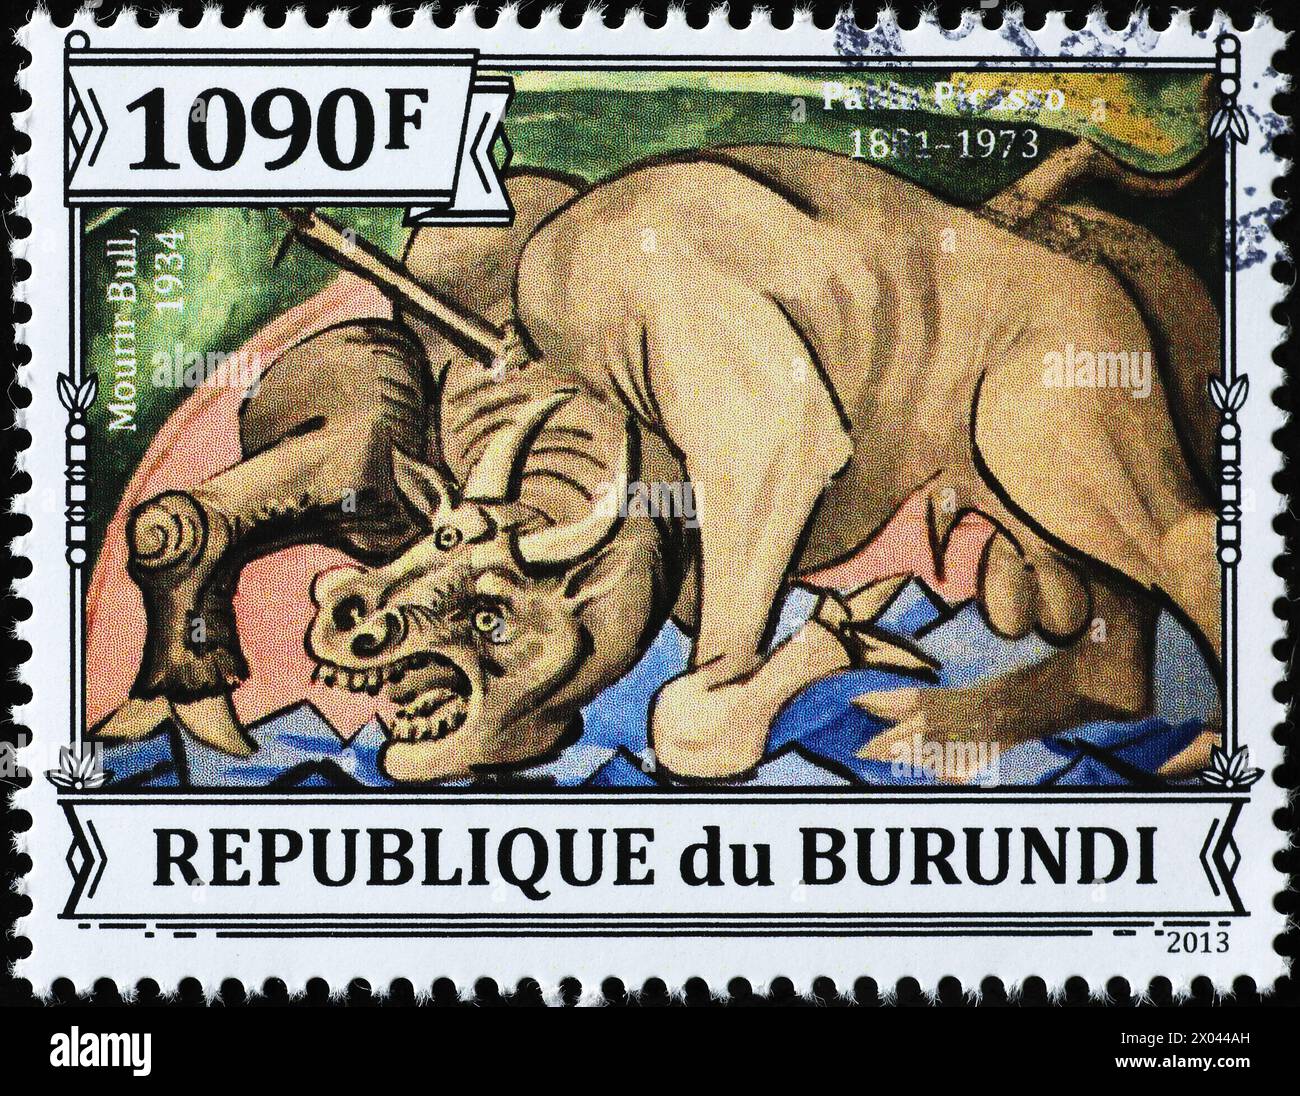 'Dying Bull' de Pablo Picasso sur timbre-poste Banque D'Images